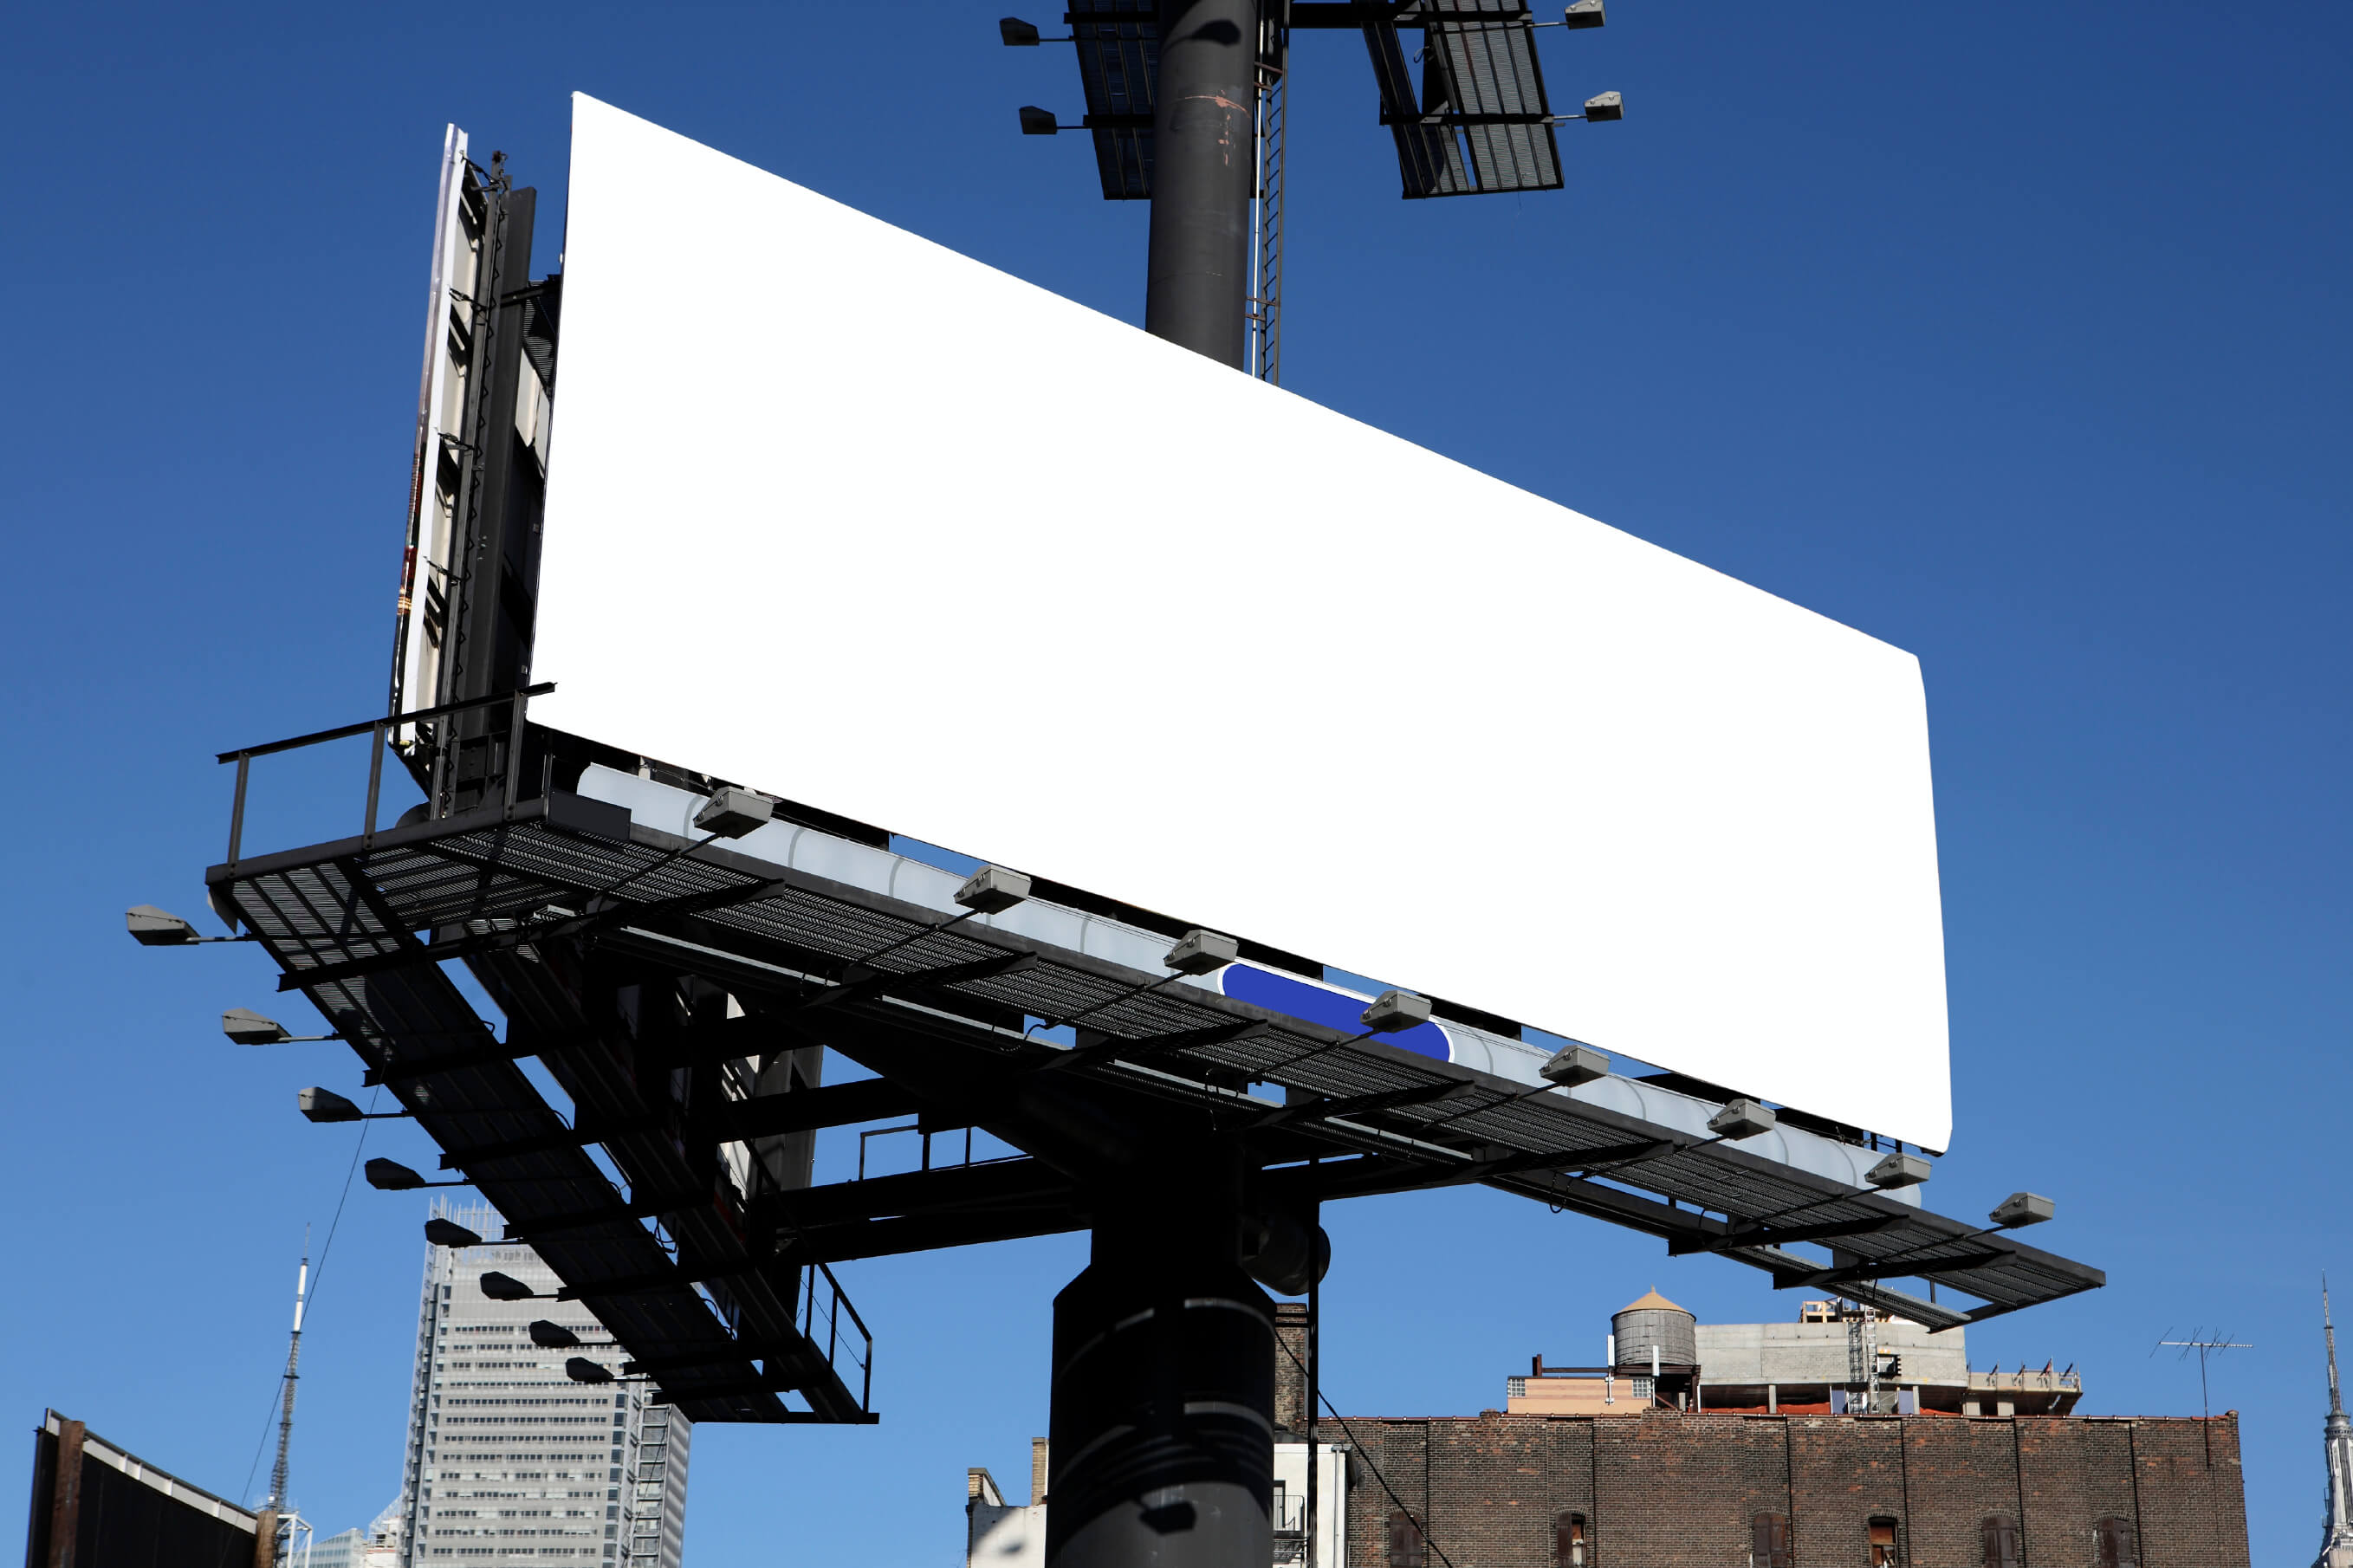 Blank billboard in a city